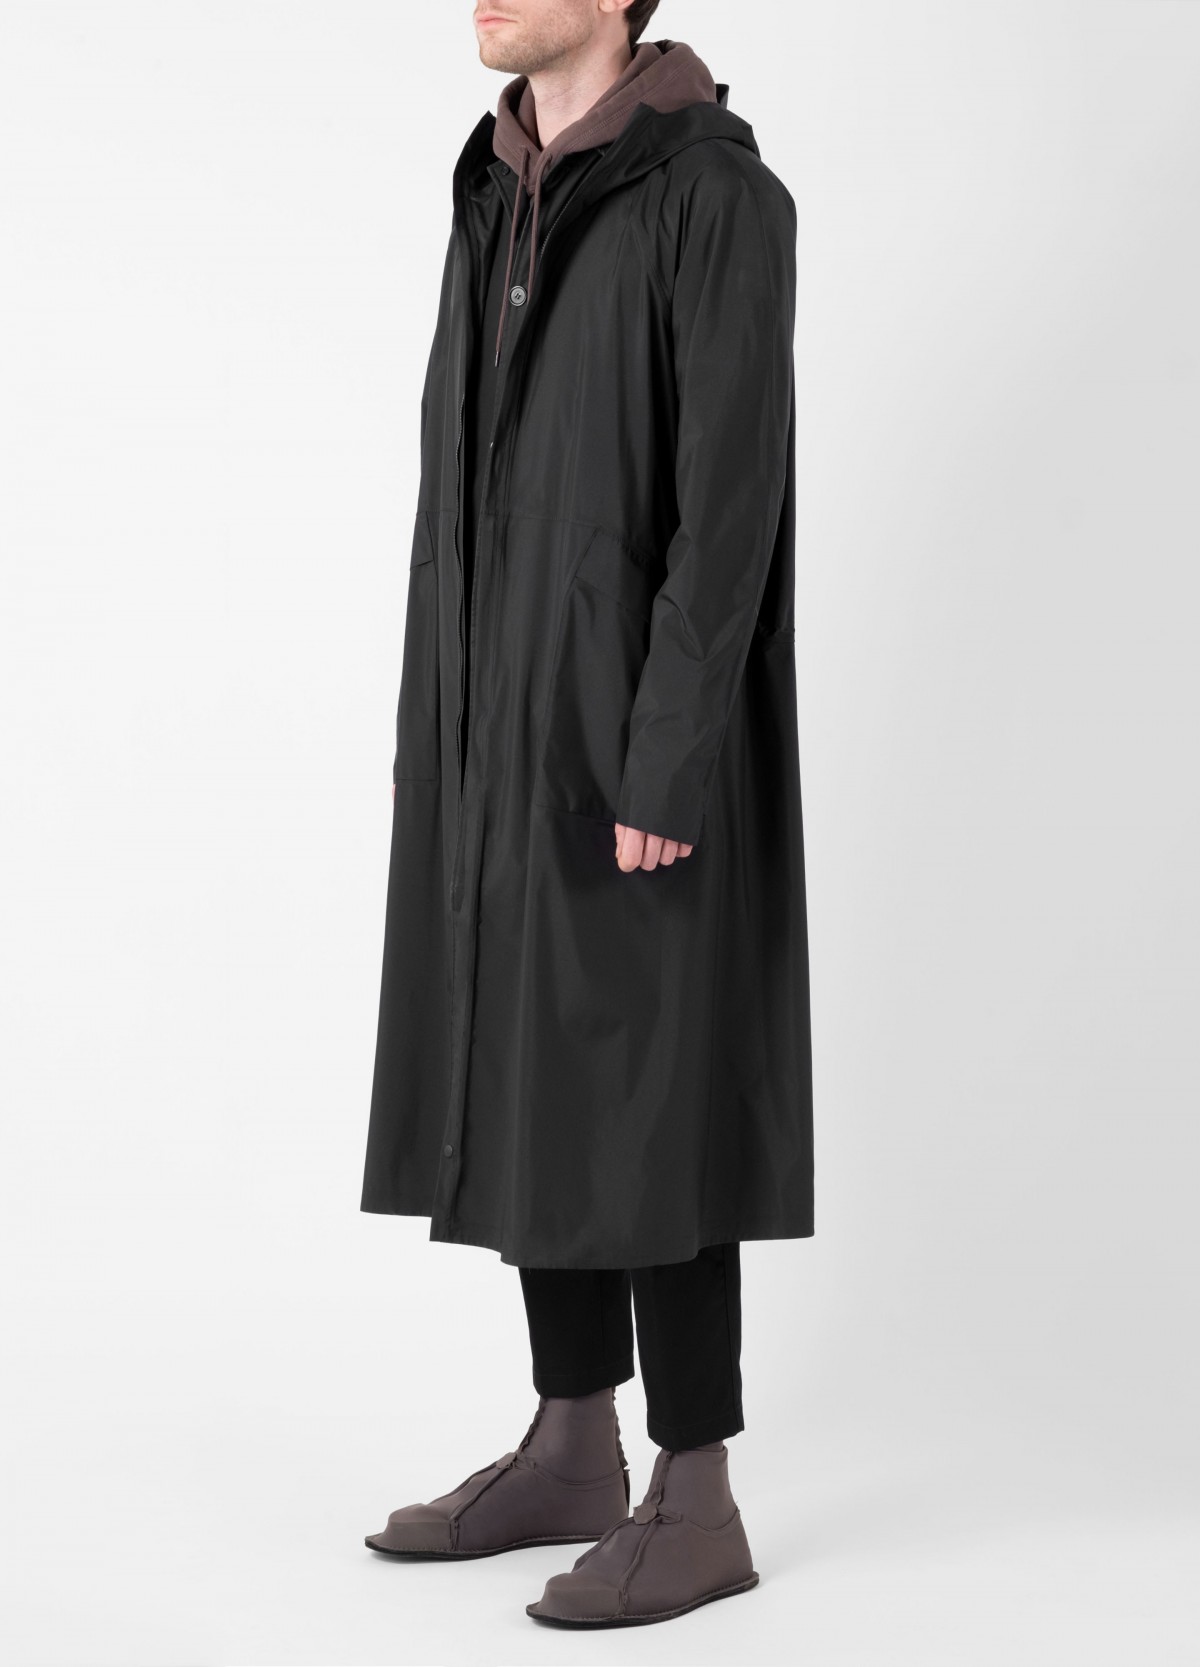 senscommon All-Commute Overcoat  in Black